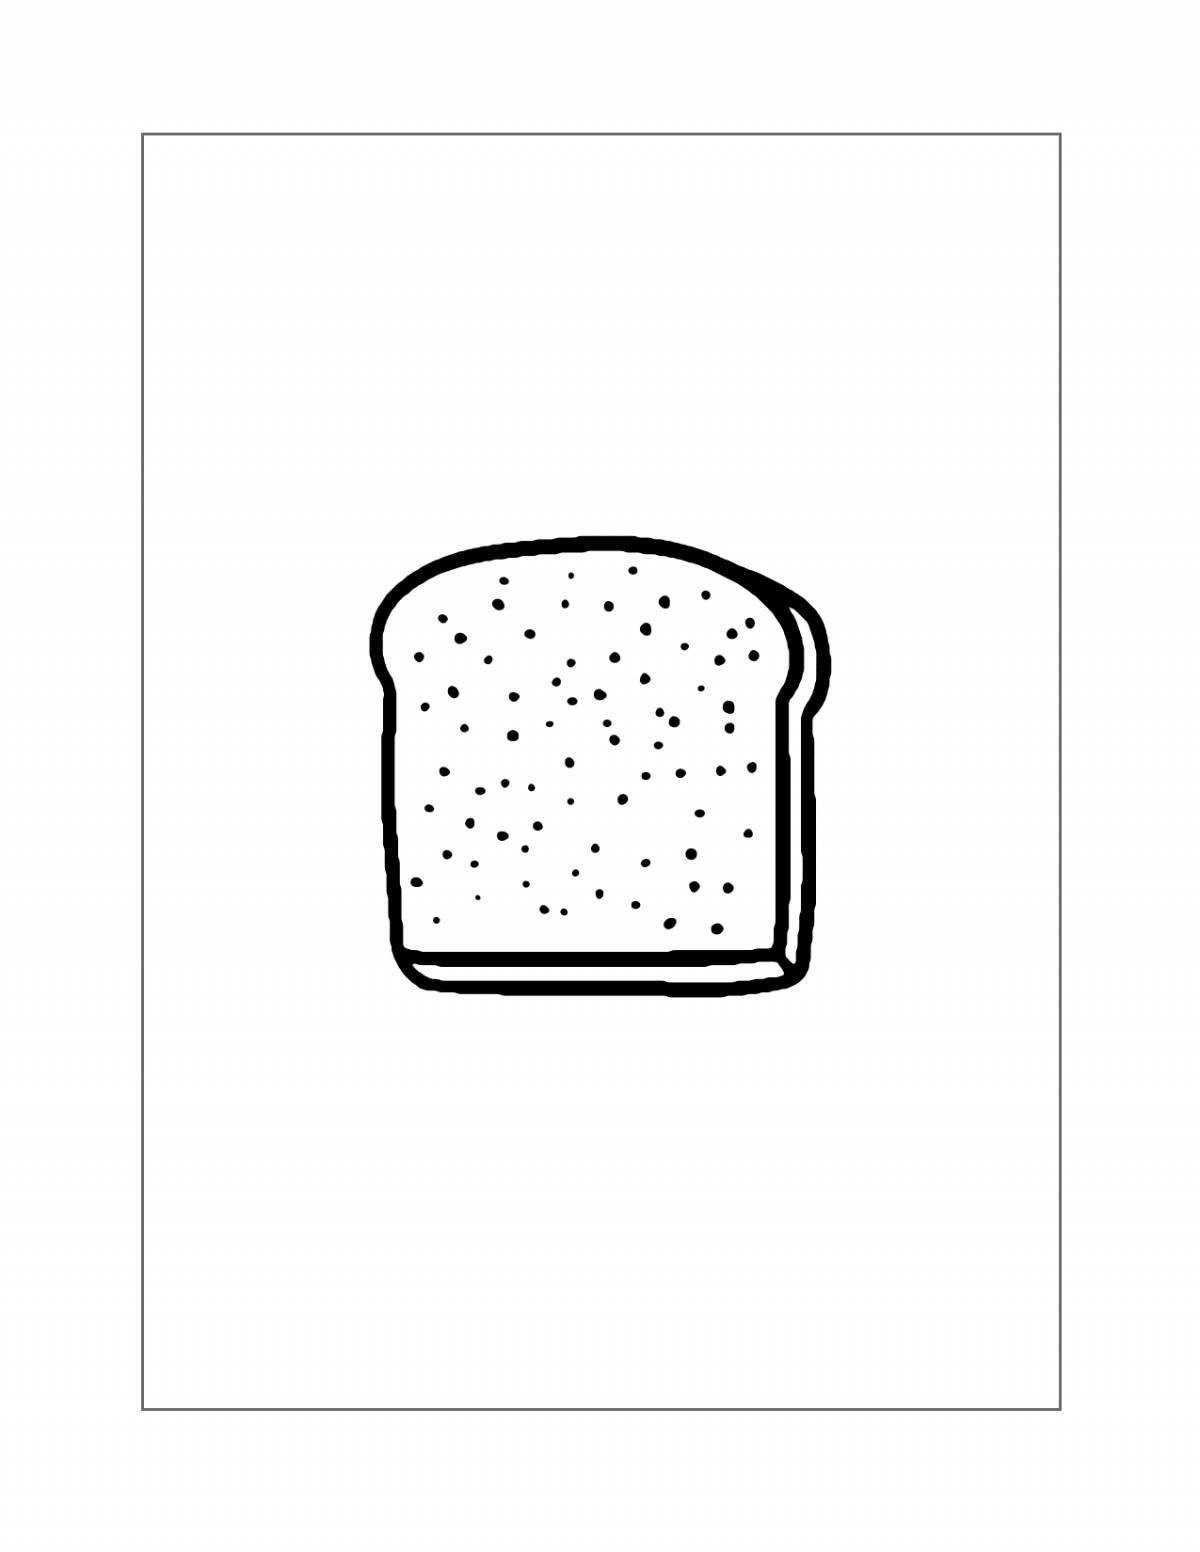 Sponge coloring slice of bread